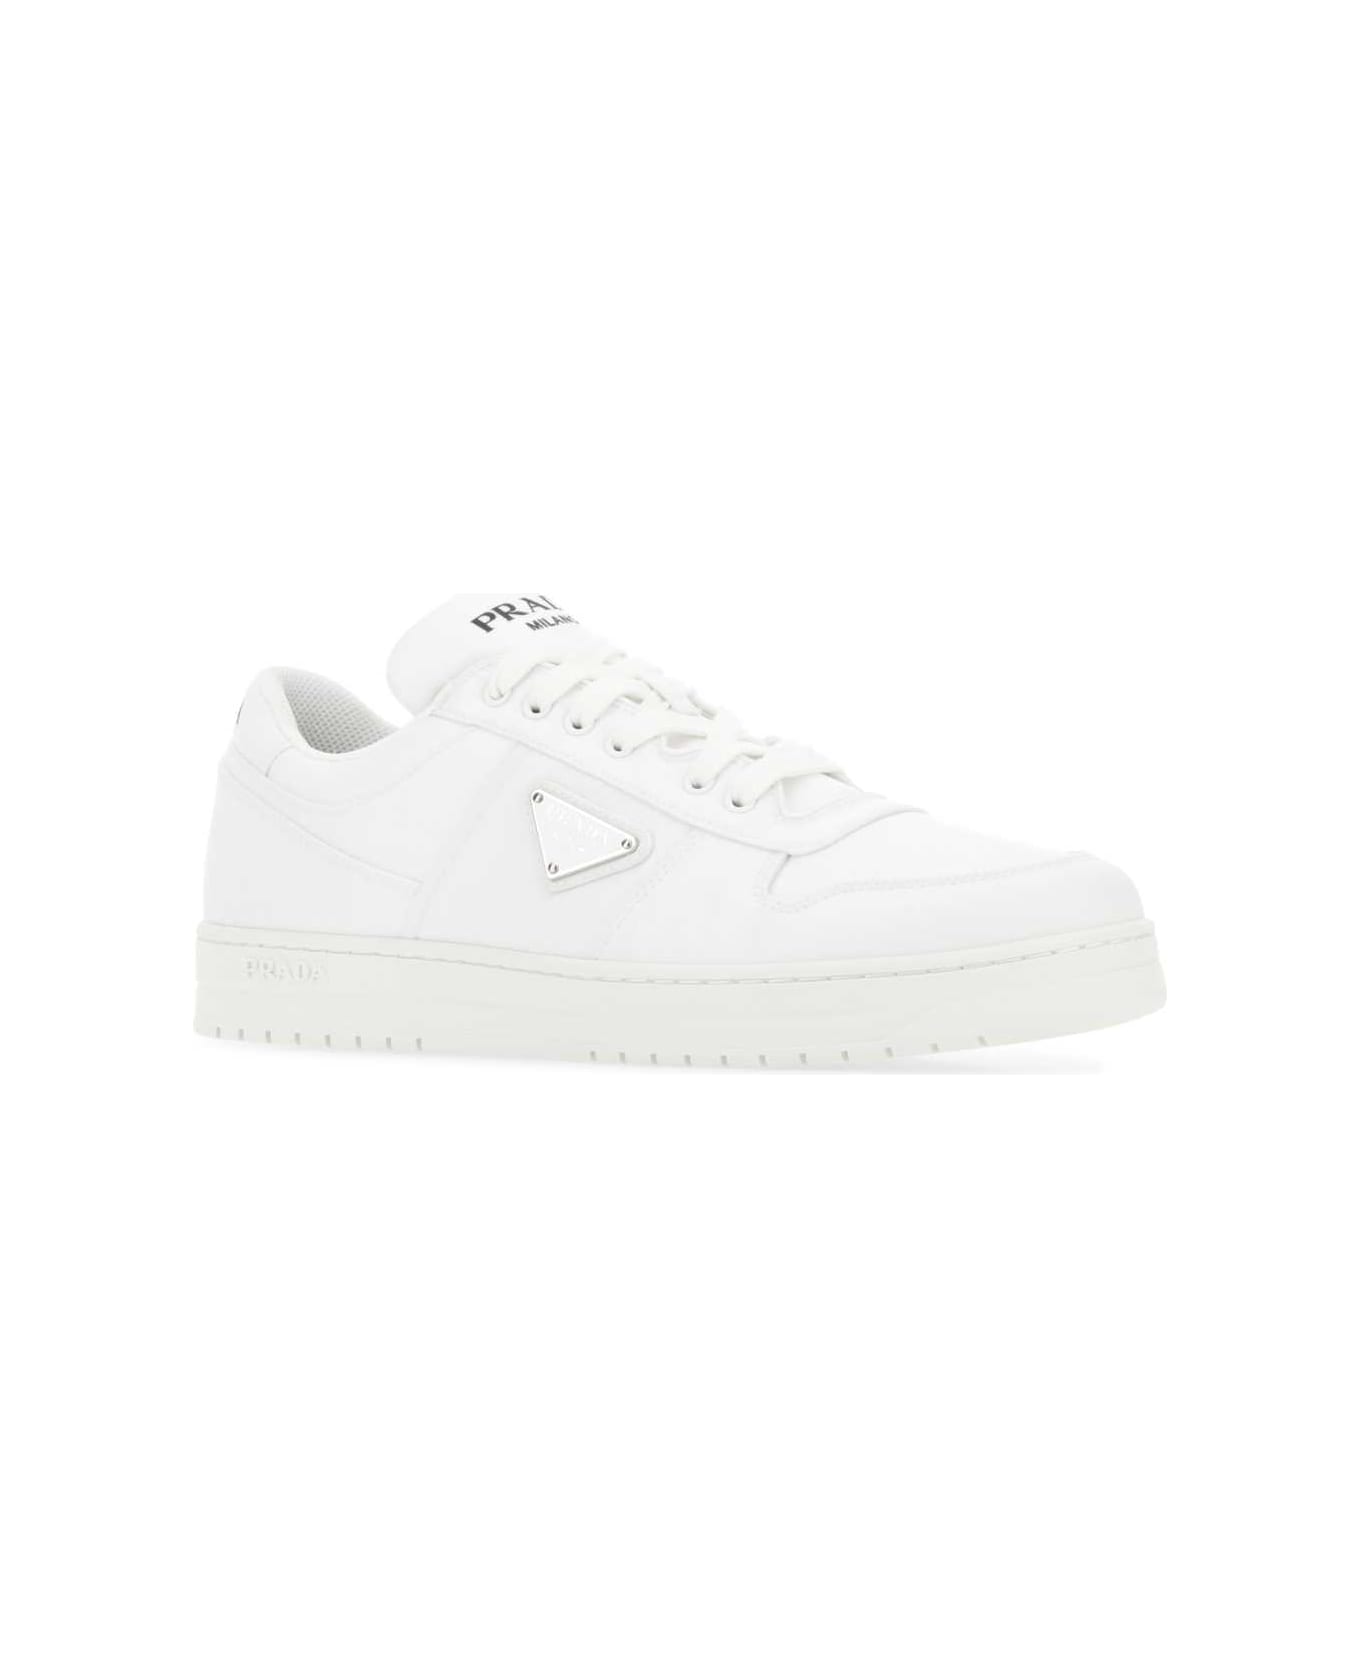 Prada White Re-nylon Sneakers - White